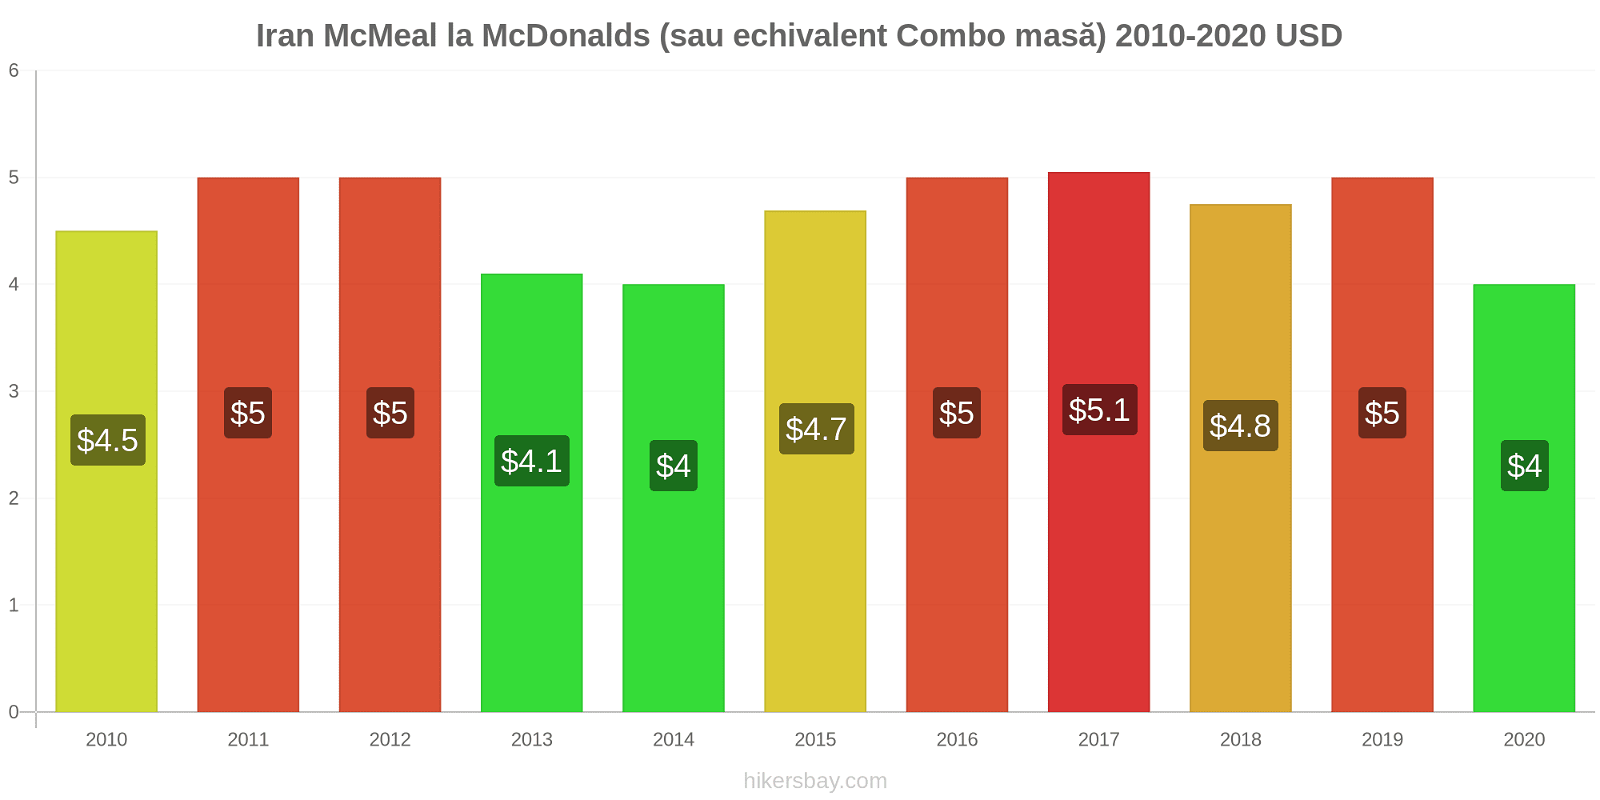 Iran modificări de preț McMeal la McDonalds (sau echivalent Combo masă) hikersbay.com